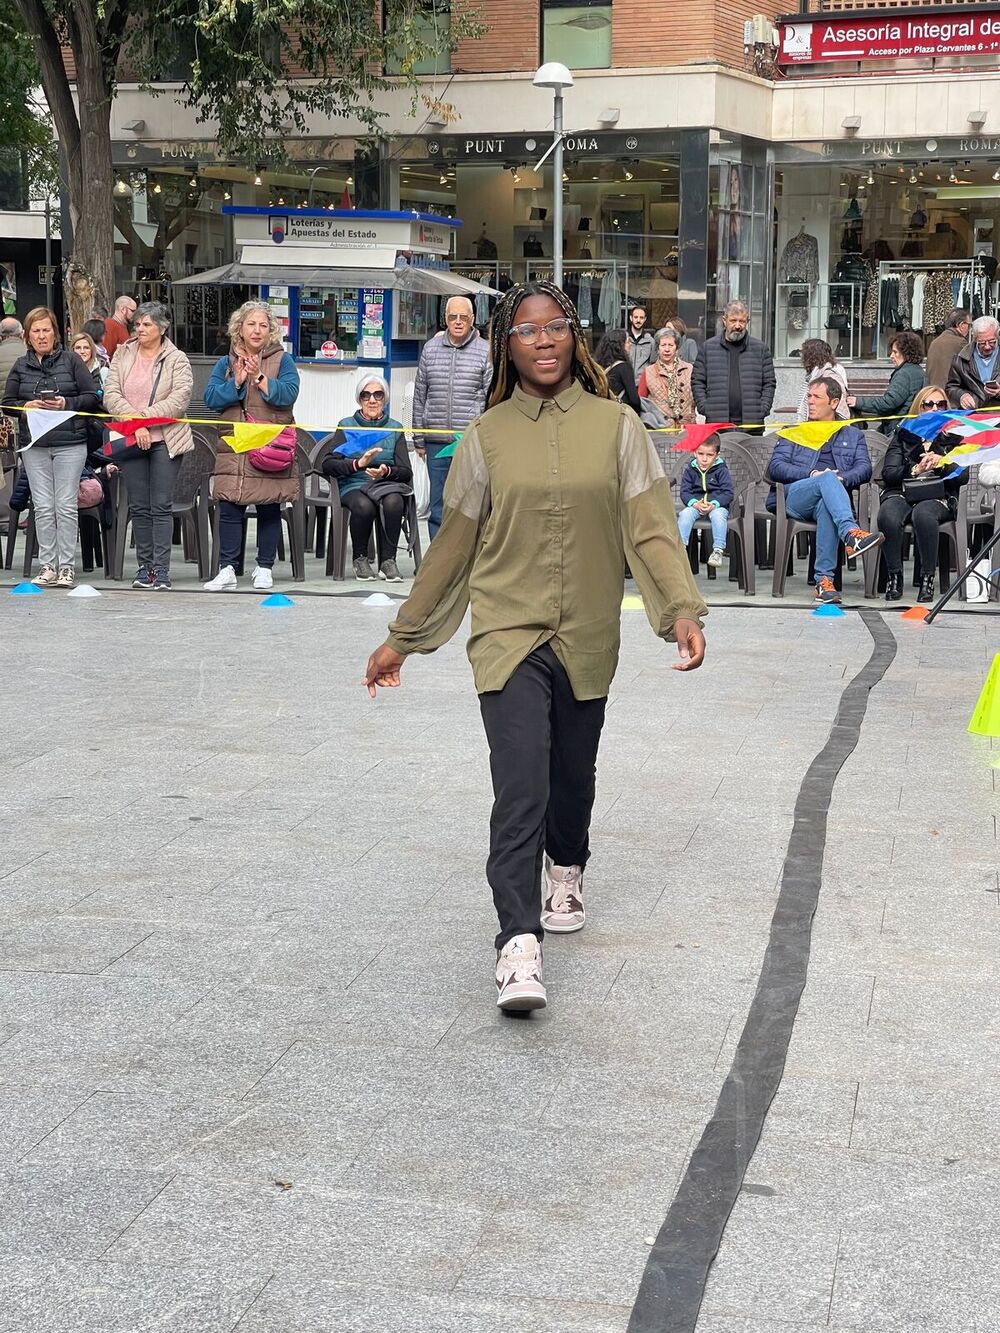 Deporte adaptado y moda inclusiva se unen en Ciudad Real